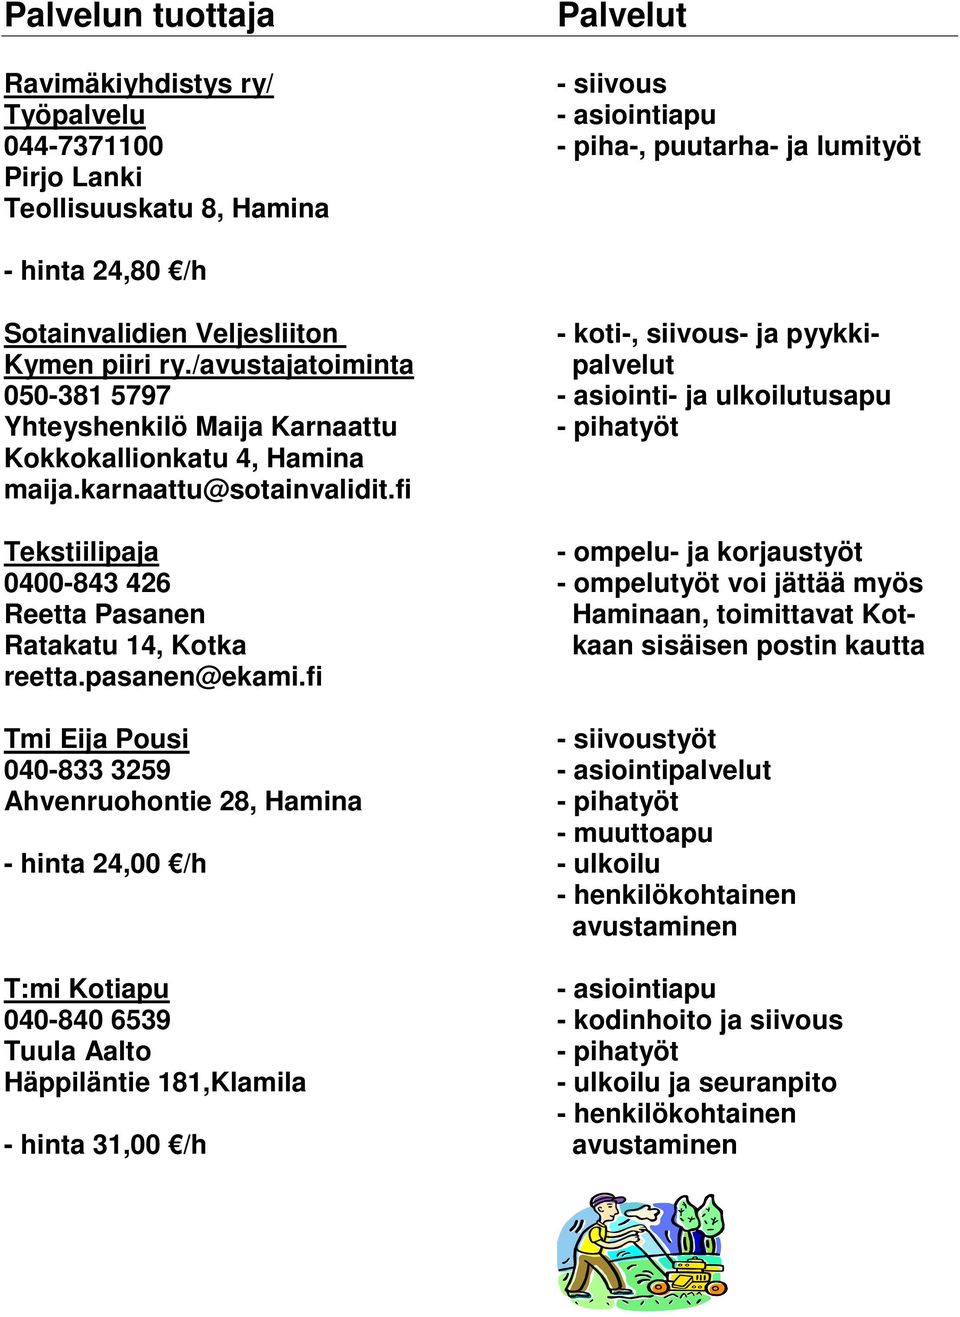 fi Tekstiilipaja - ompelu- ja korjaustyöt 0400-843 426 - ompelutyöt voi jättää myös Reetta Pasanen Haminaan, toimittavat Kot- Ratakatu 14, Kotka kaan sisäisen postin kautta reetta.pasanen@ekami.